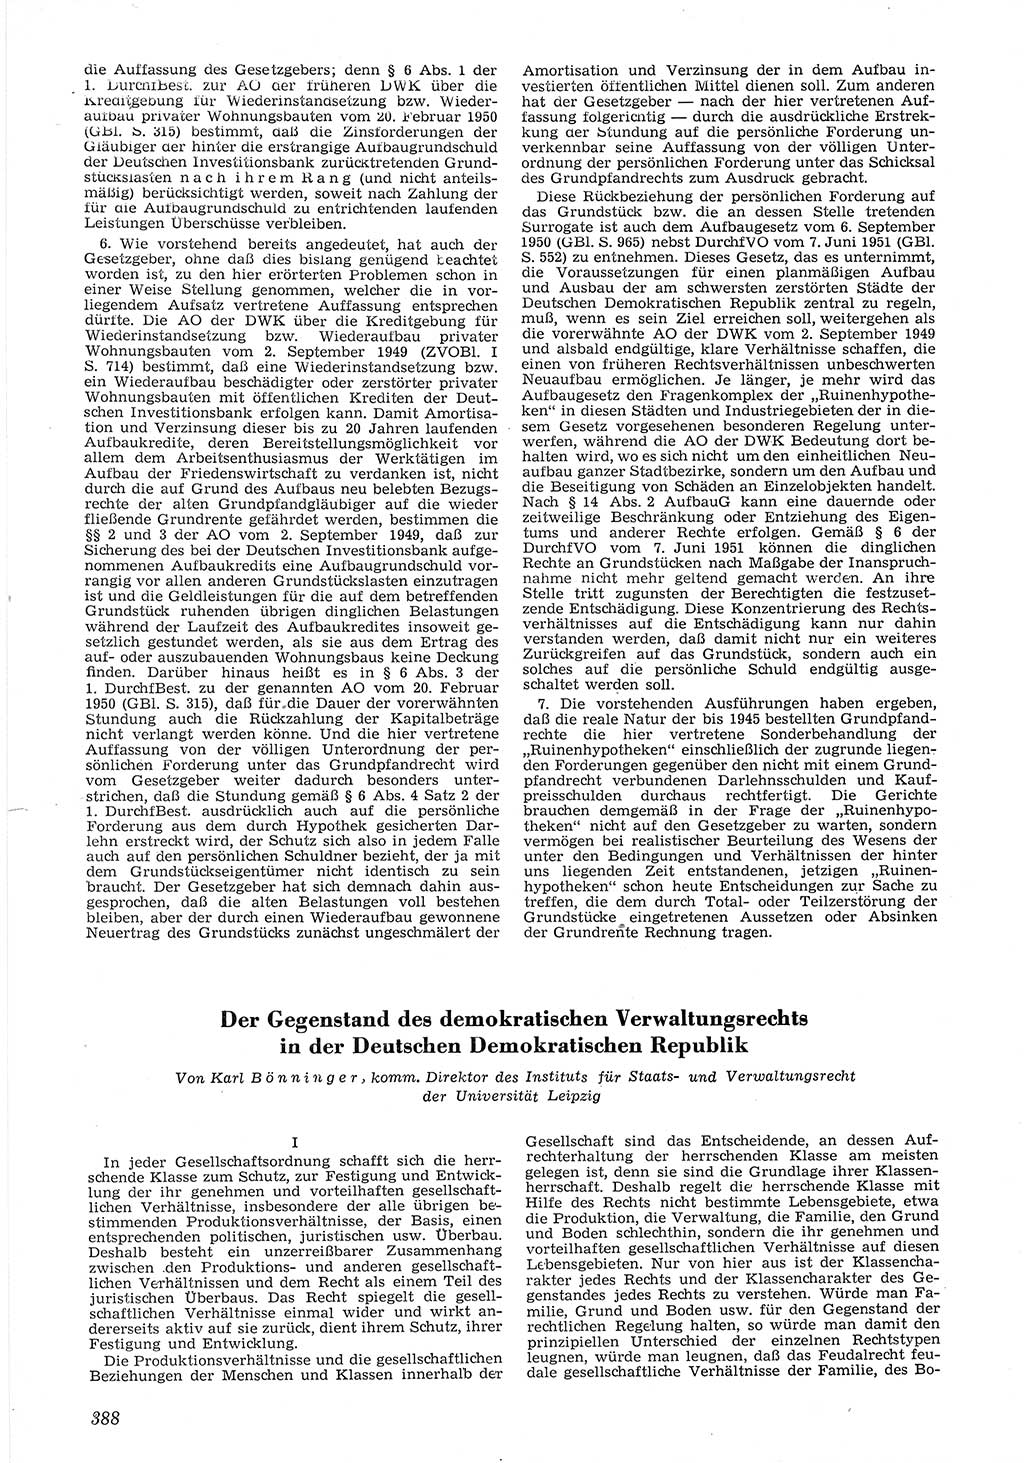 Neue Justiz (NJ), Zeitschrift für Recht und Rechtswissenschaft [Deutsche Demokratische Republik (DDR)], 6. Jahrgang 1952, Seite 388 (NJ DDR 1952, S. 388)